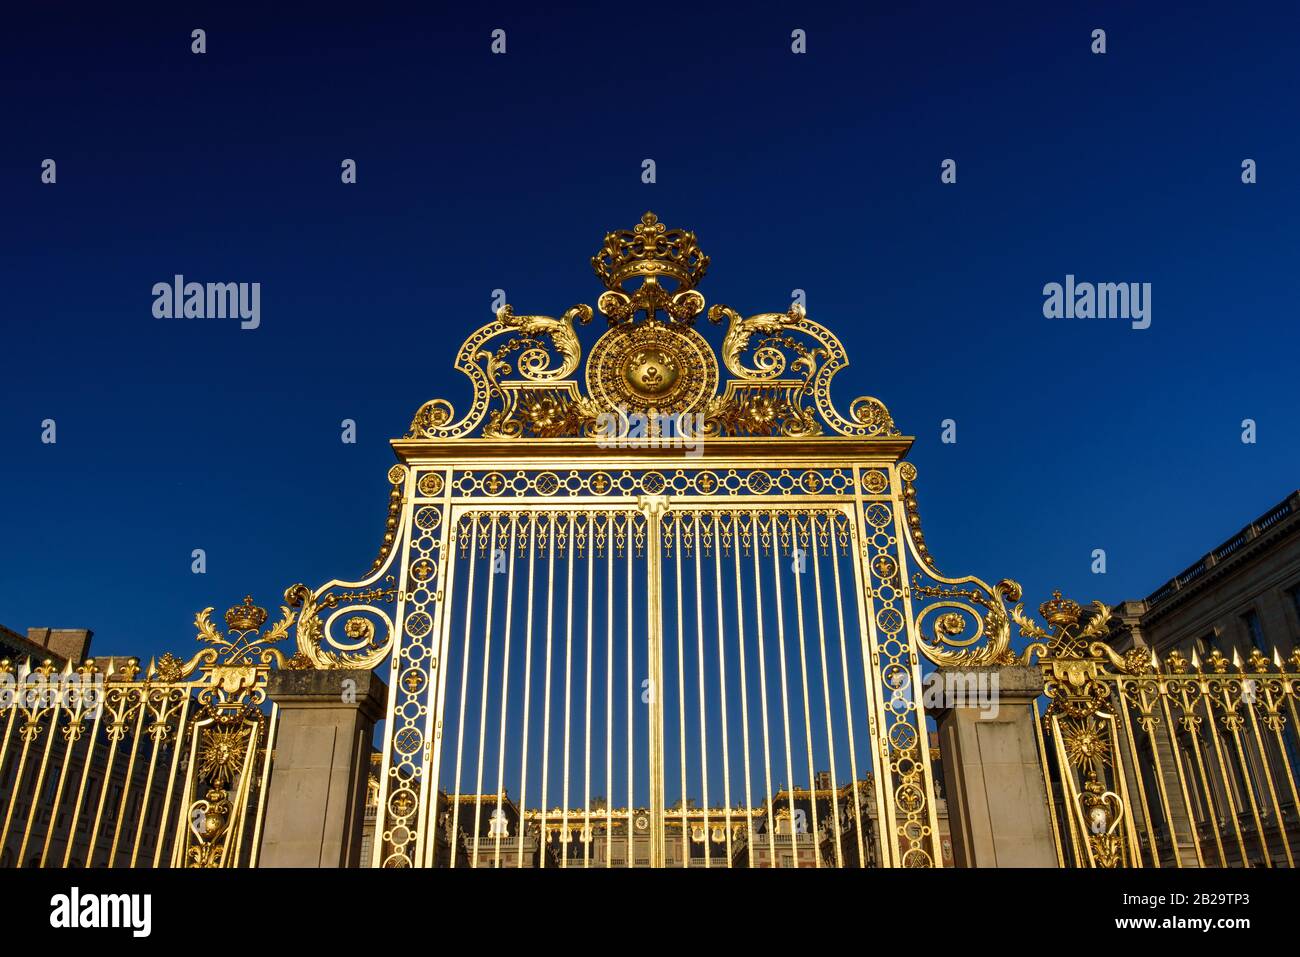 The golden gate of Palace of Versailles (Château de Versailles), Paris, France Stock Photo